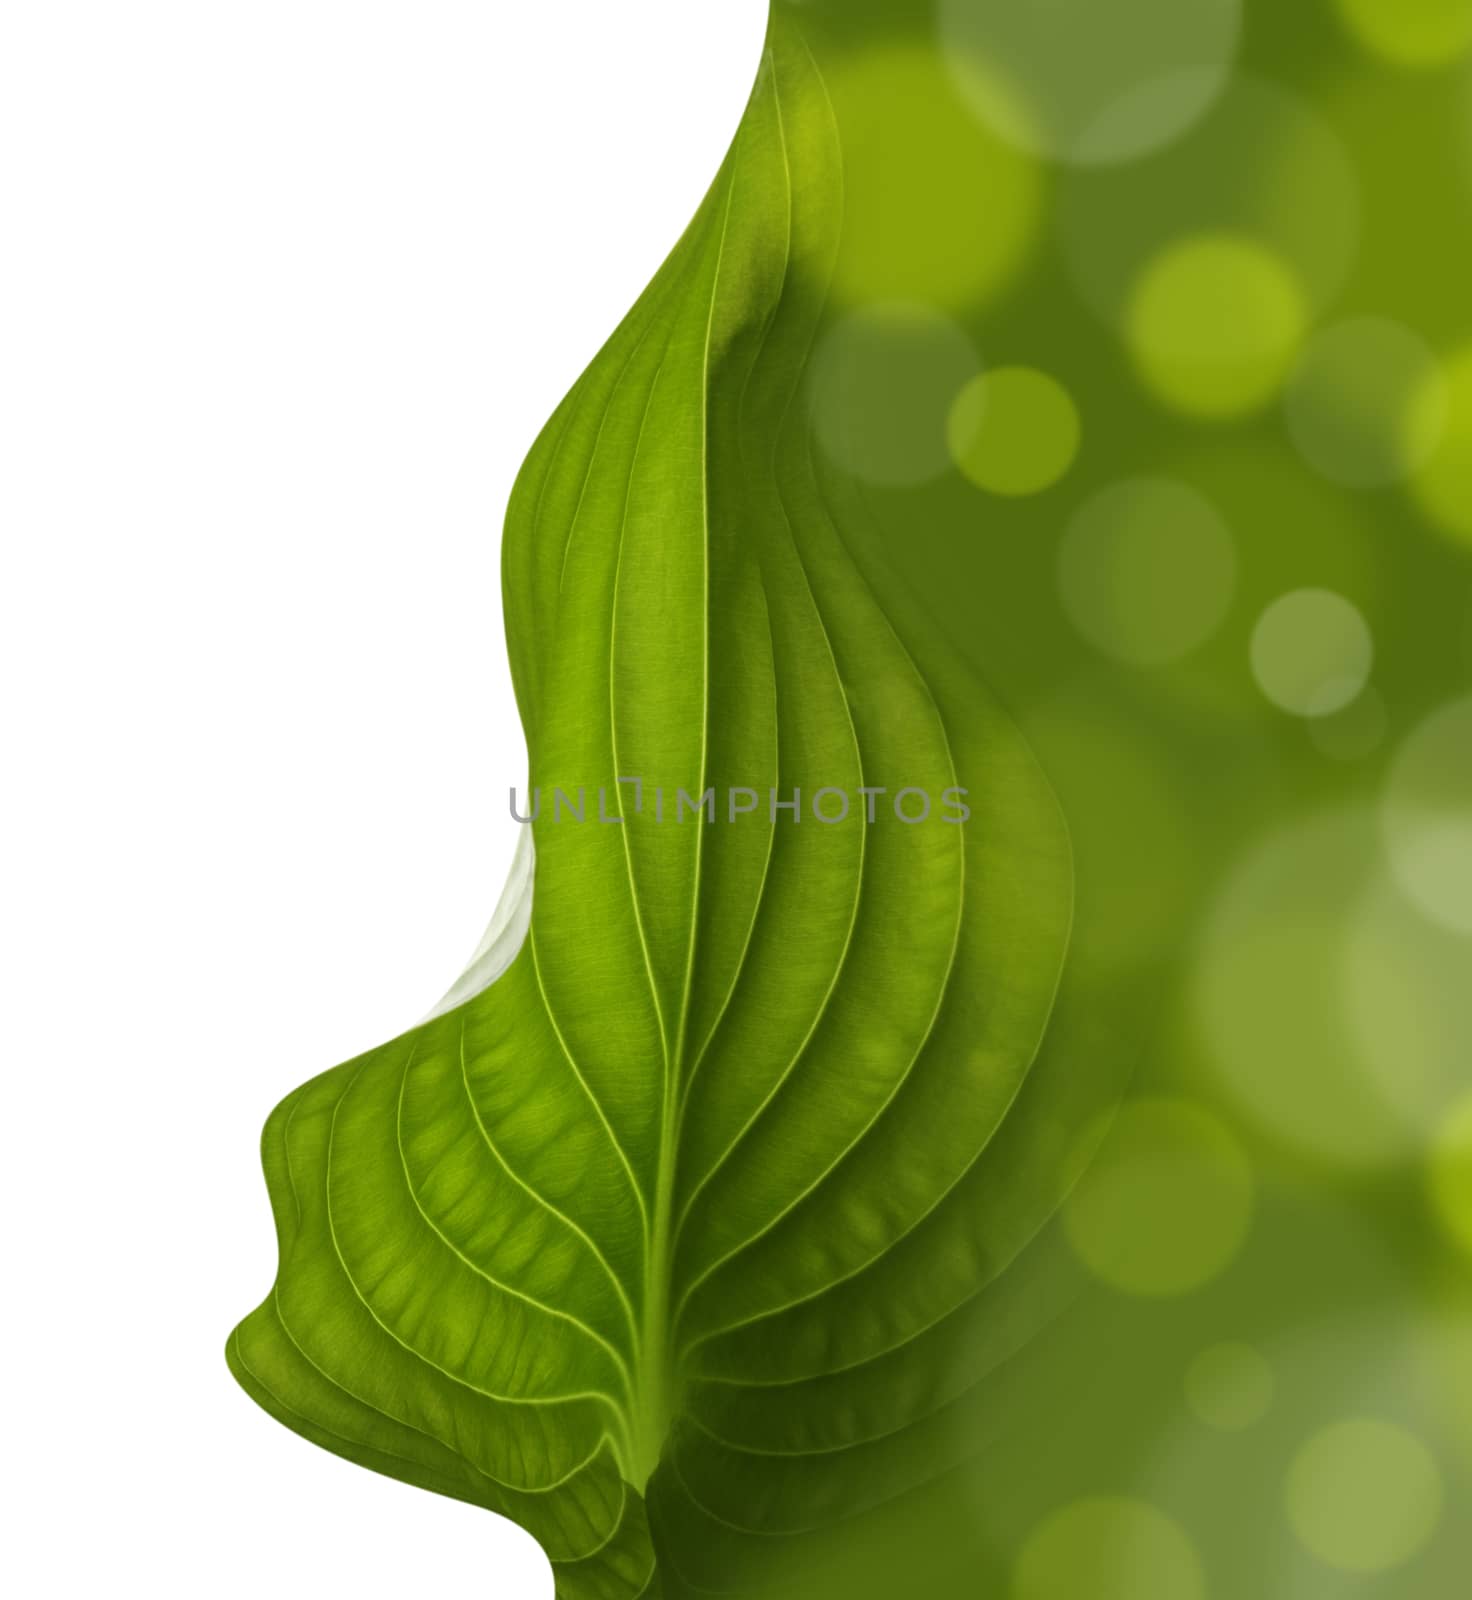 green leaf background by rudchenko